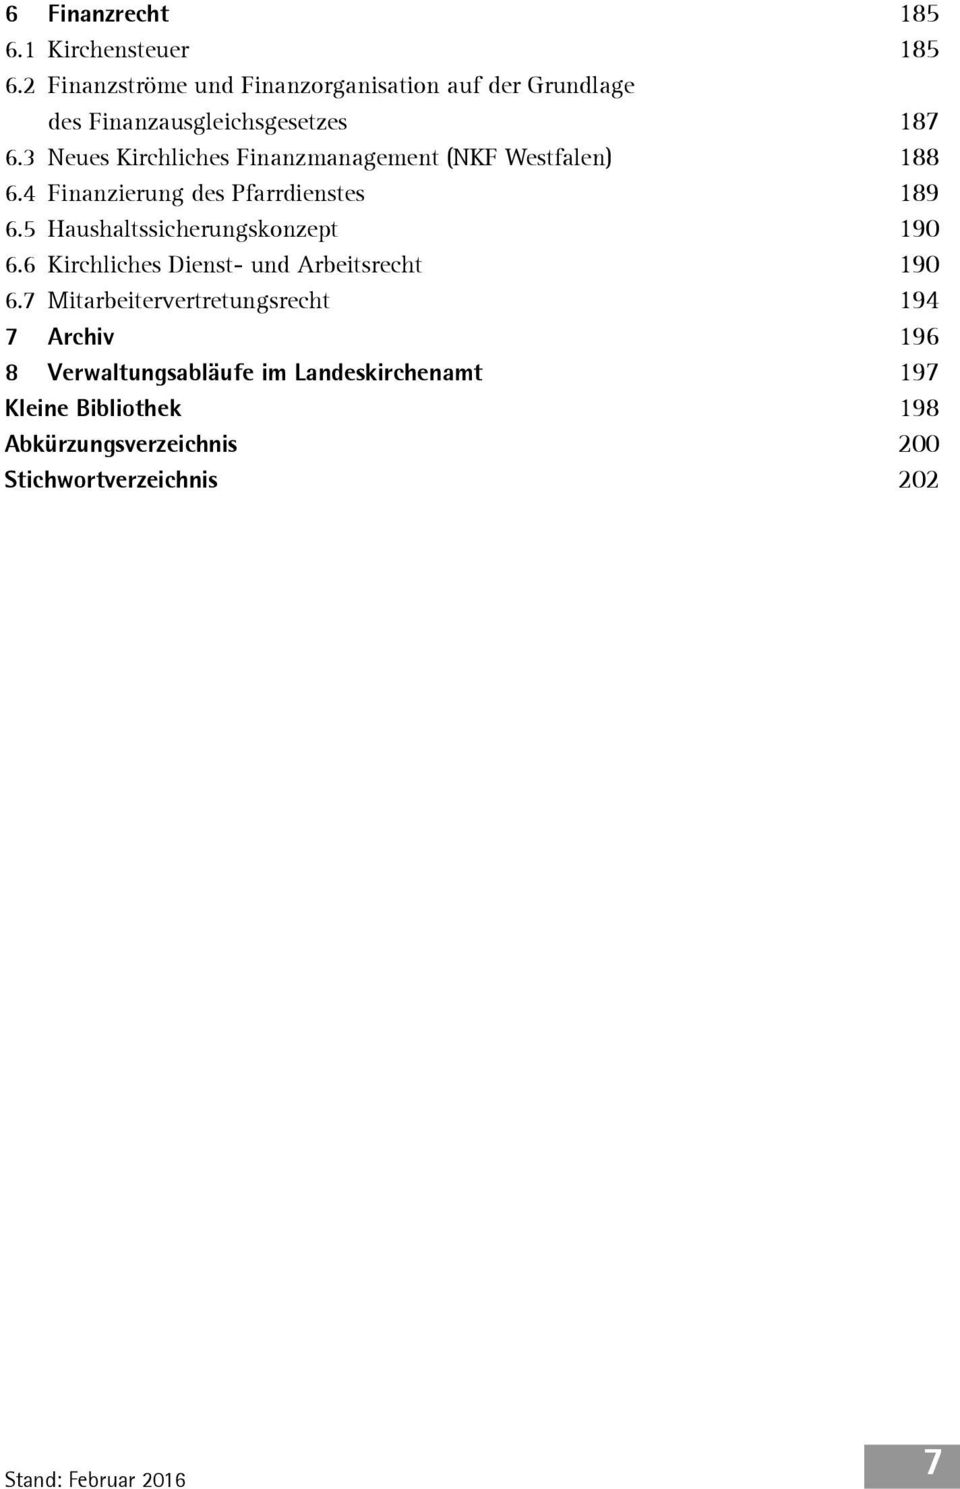 3 Neues Kirchliches Finanzmanagement (NKF Westfalen) 188 6.4 Finanzierung des Pfarrdienstes 189 6.